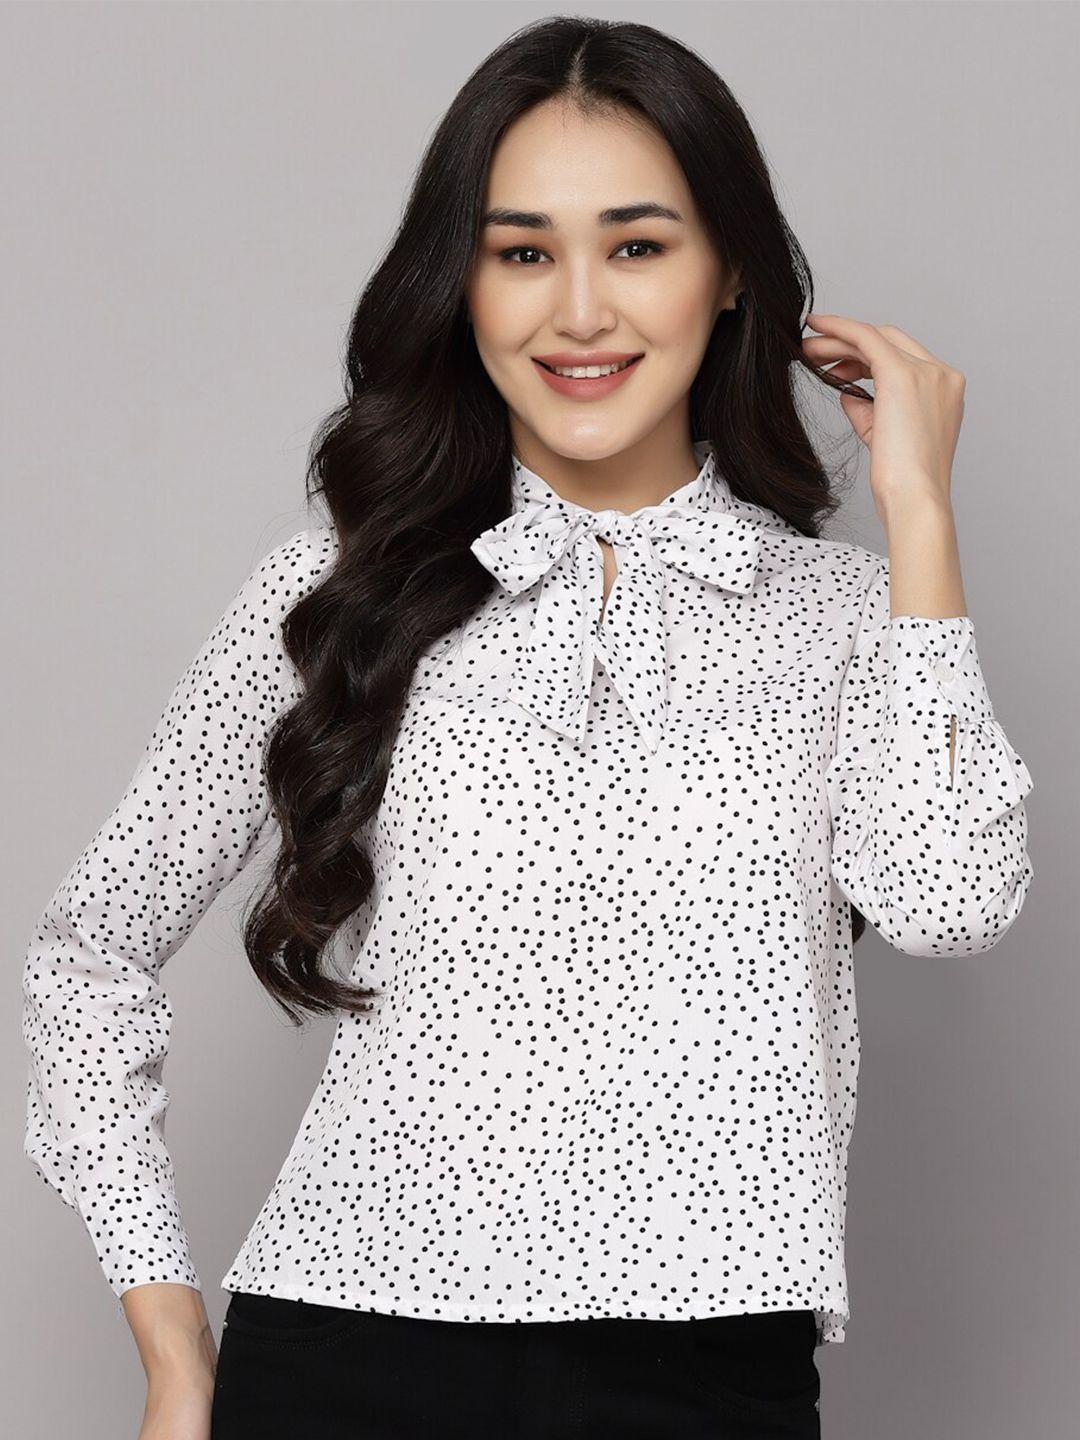 aayu polka dots printed shirt style top